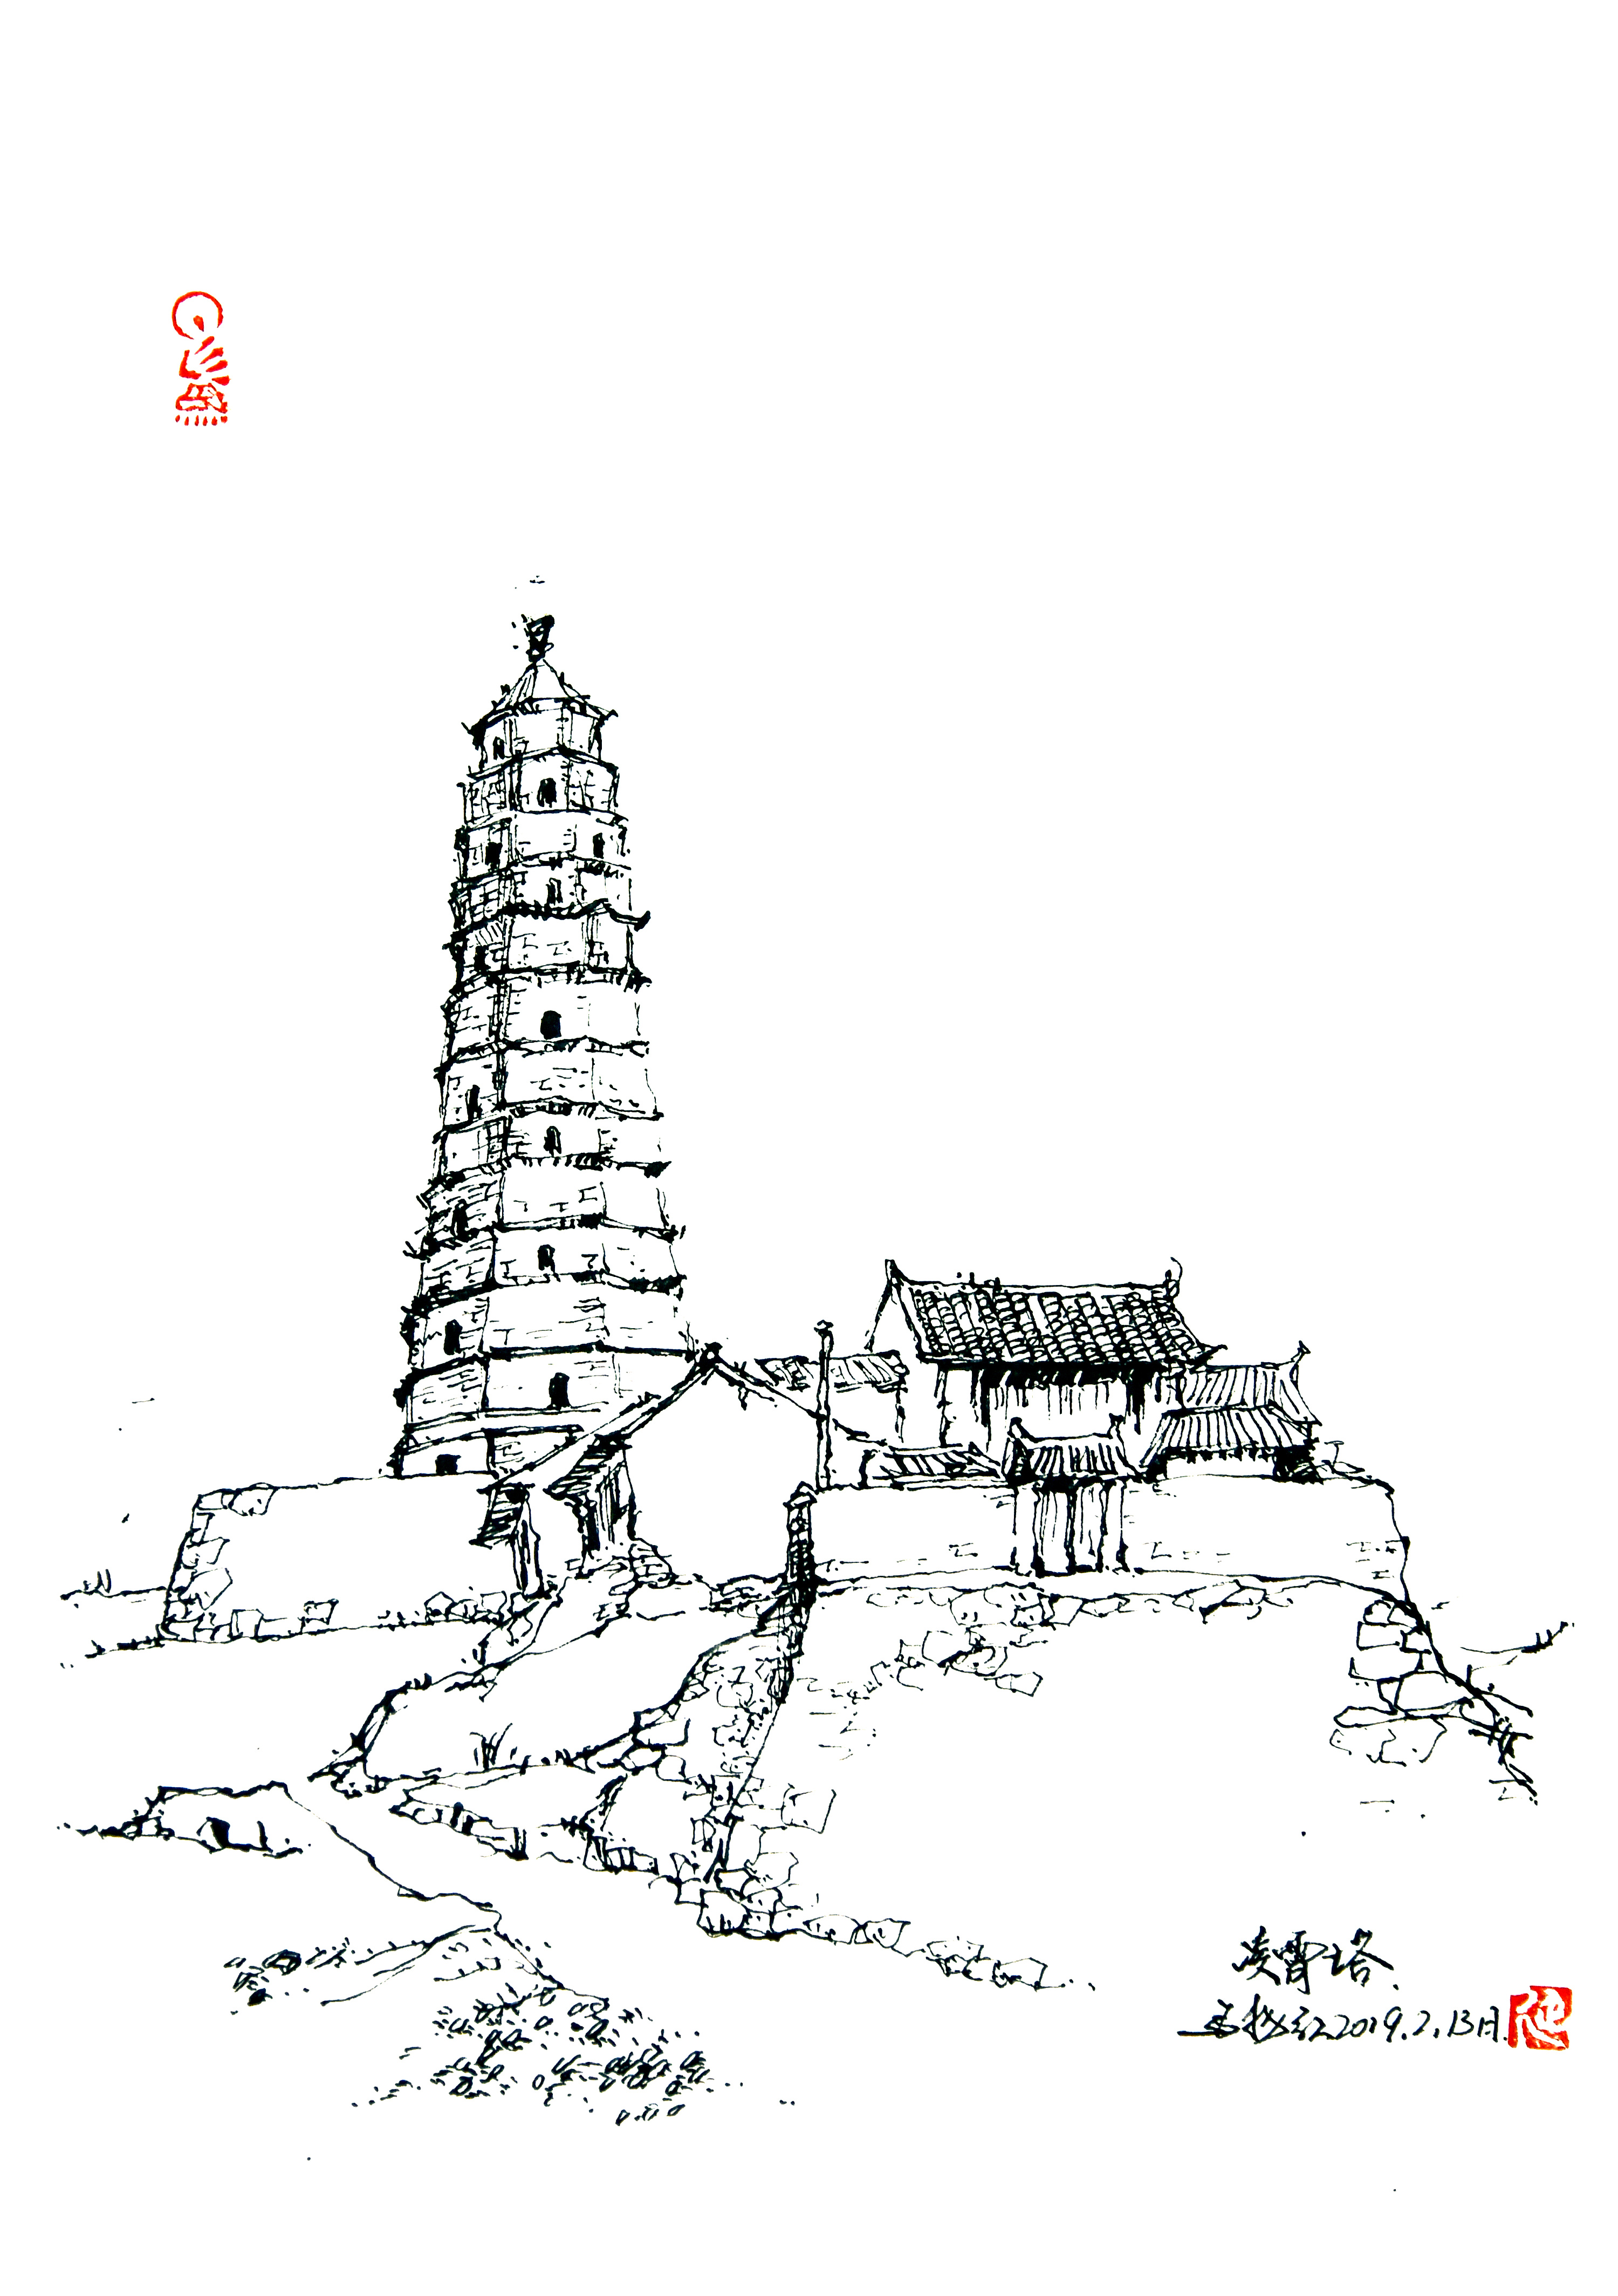 陕西古塔手绘系列之(二)榆林地区古塔|纯艺术|钢笔画|延杨红钢笔画